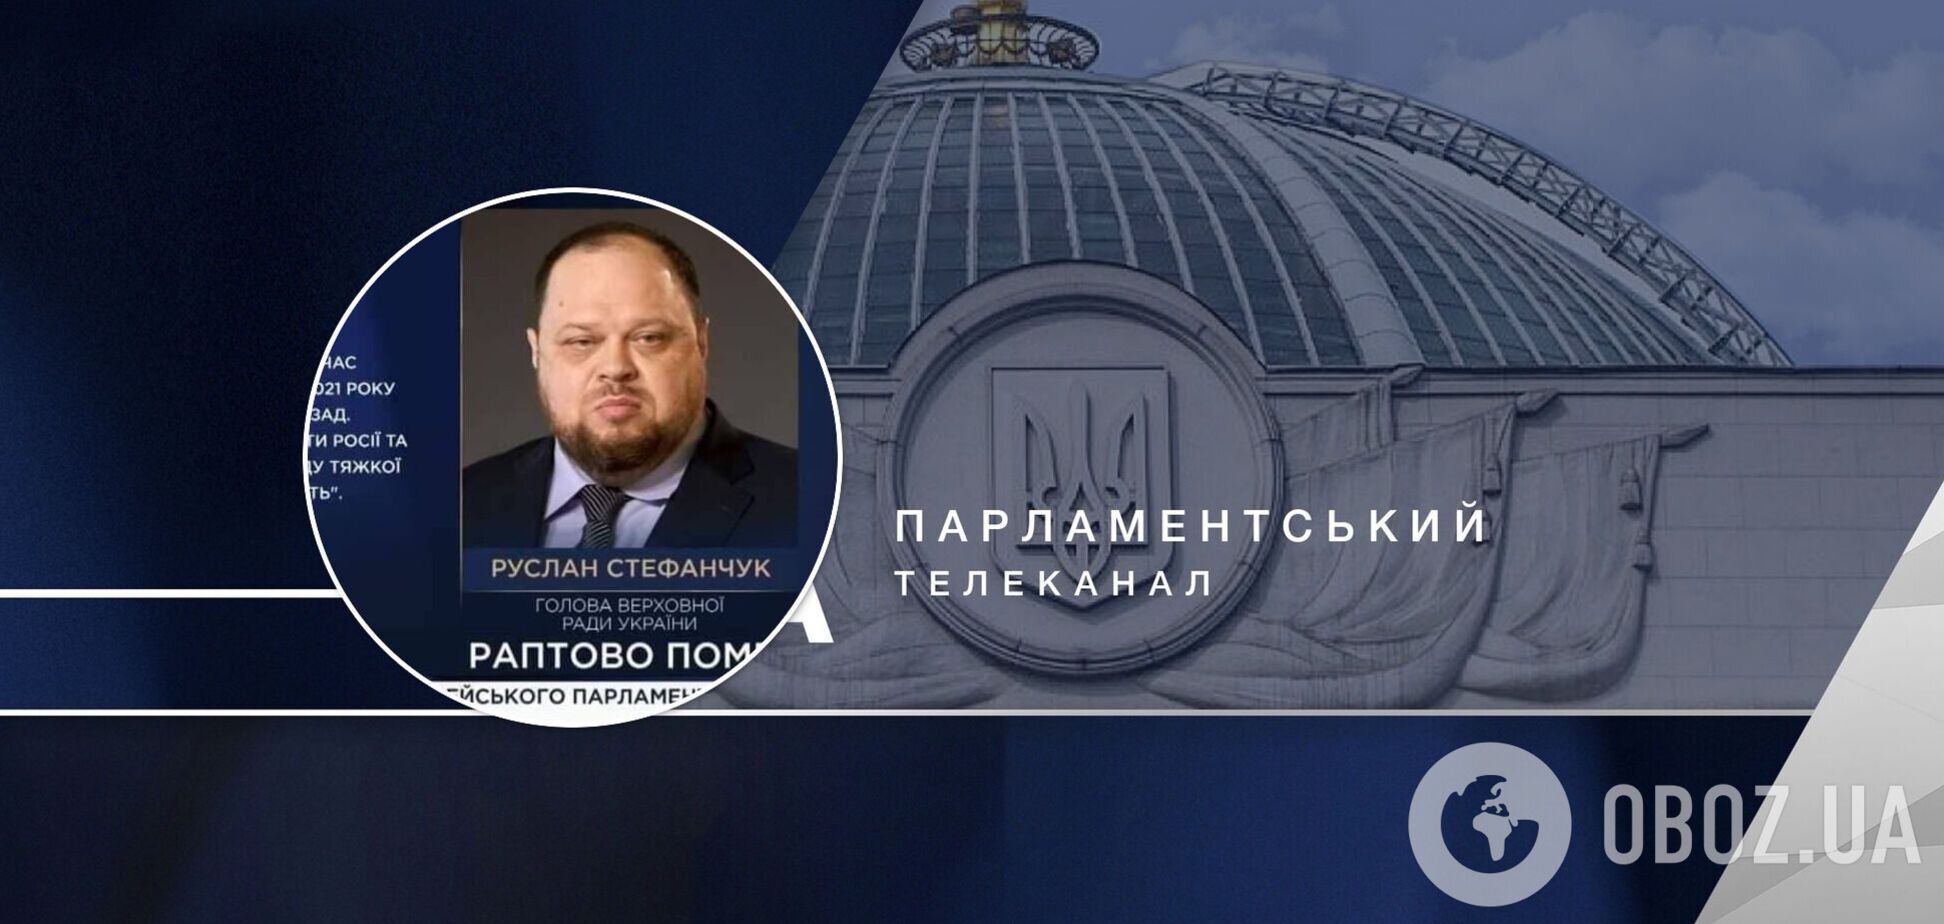 Телеканал Рада случайно 'похоронил' спикера ВР Стефанчука: в соцсетях отреагировали. Видео